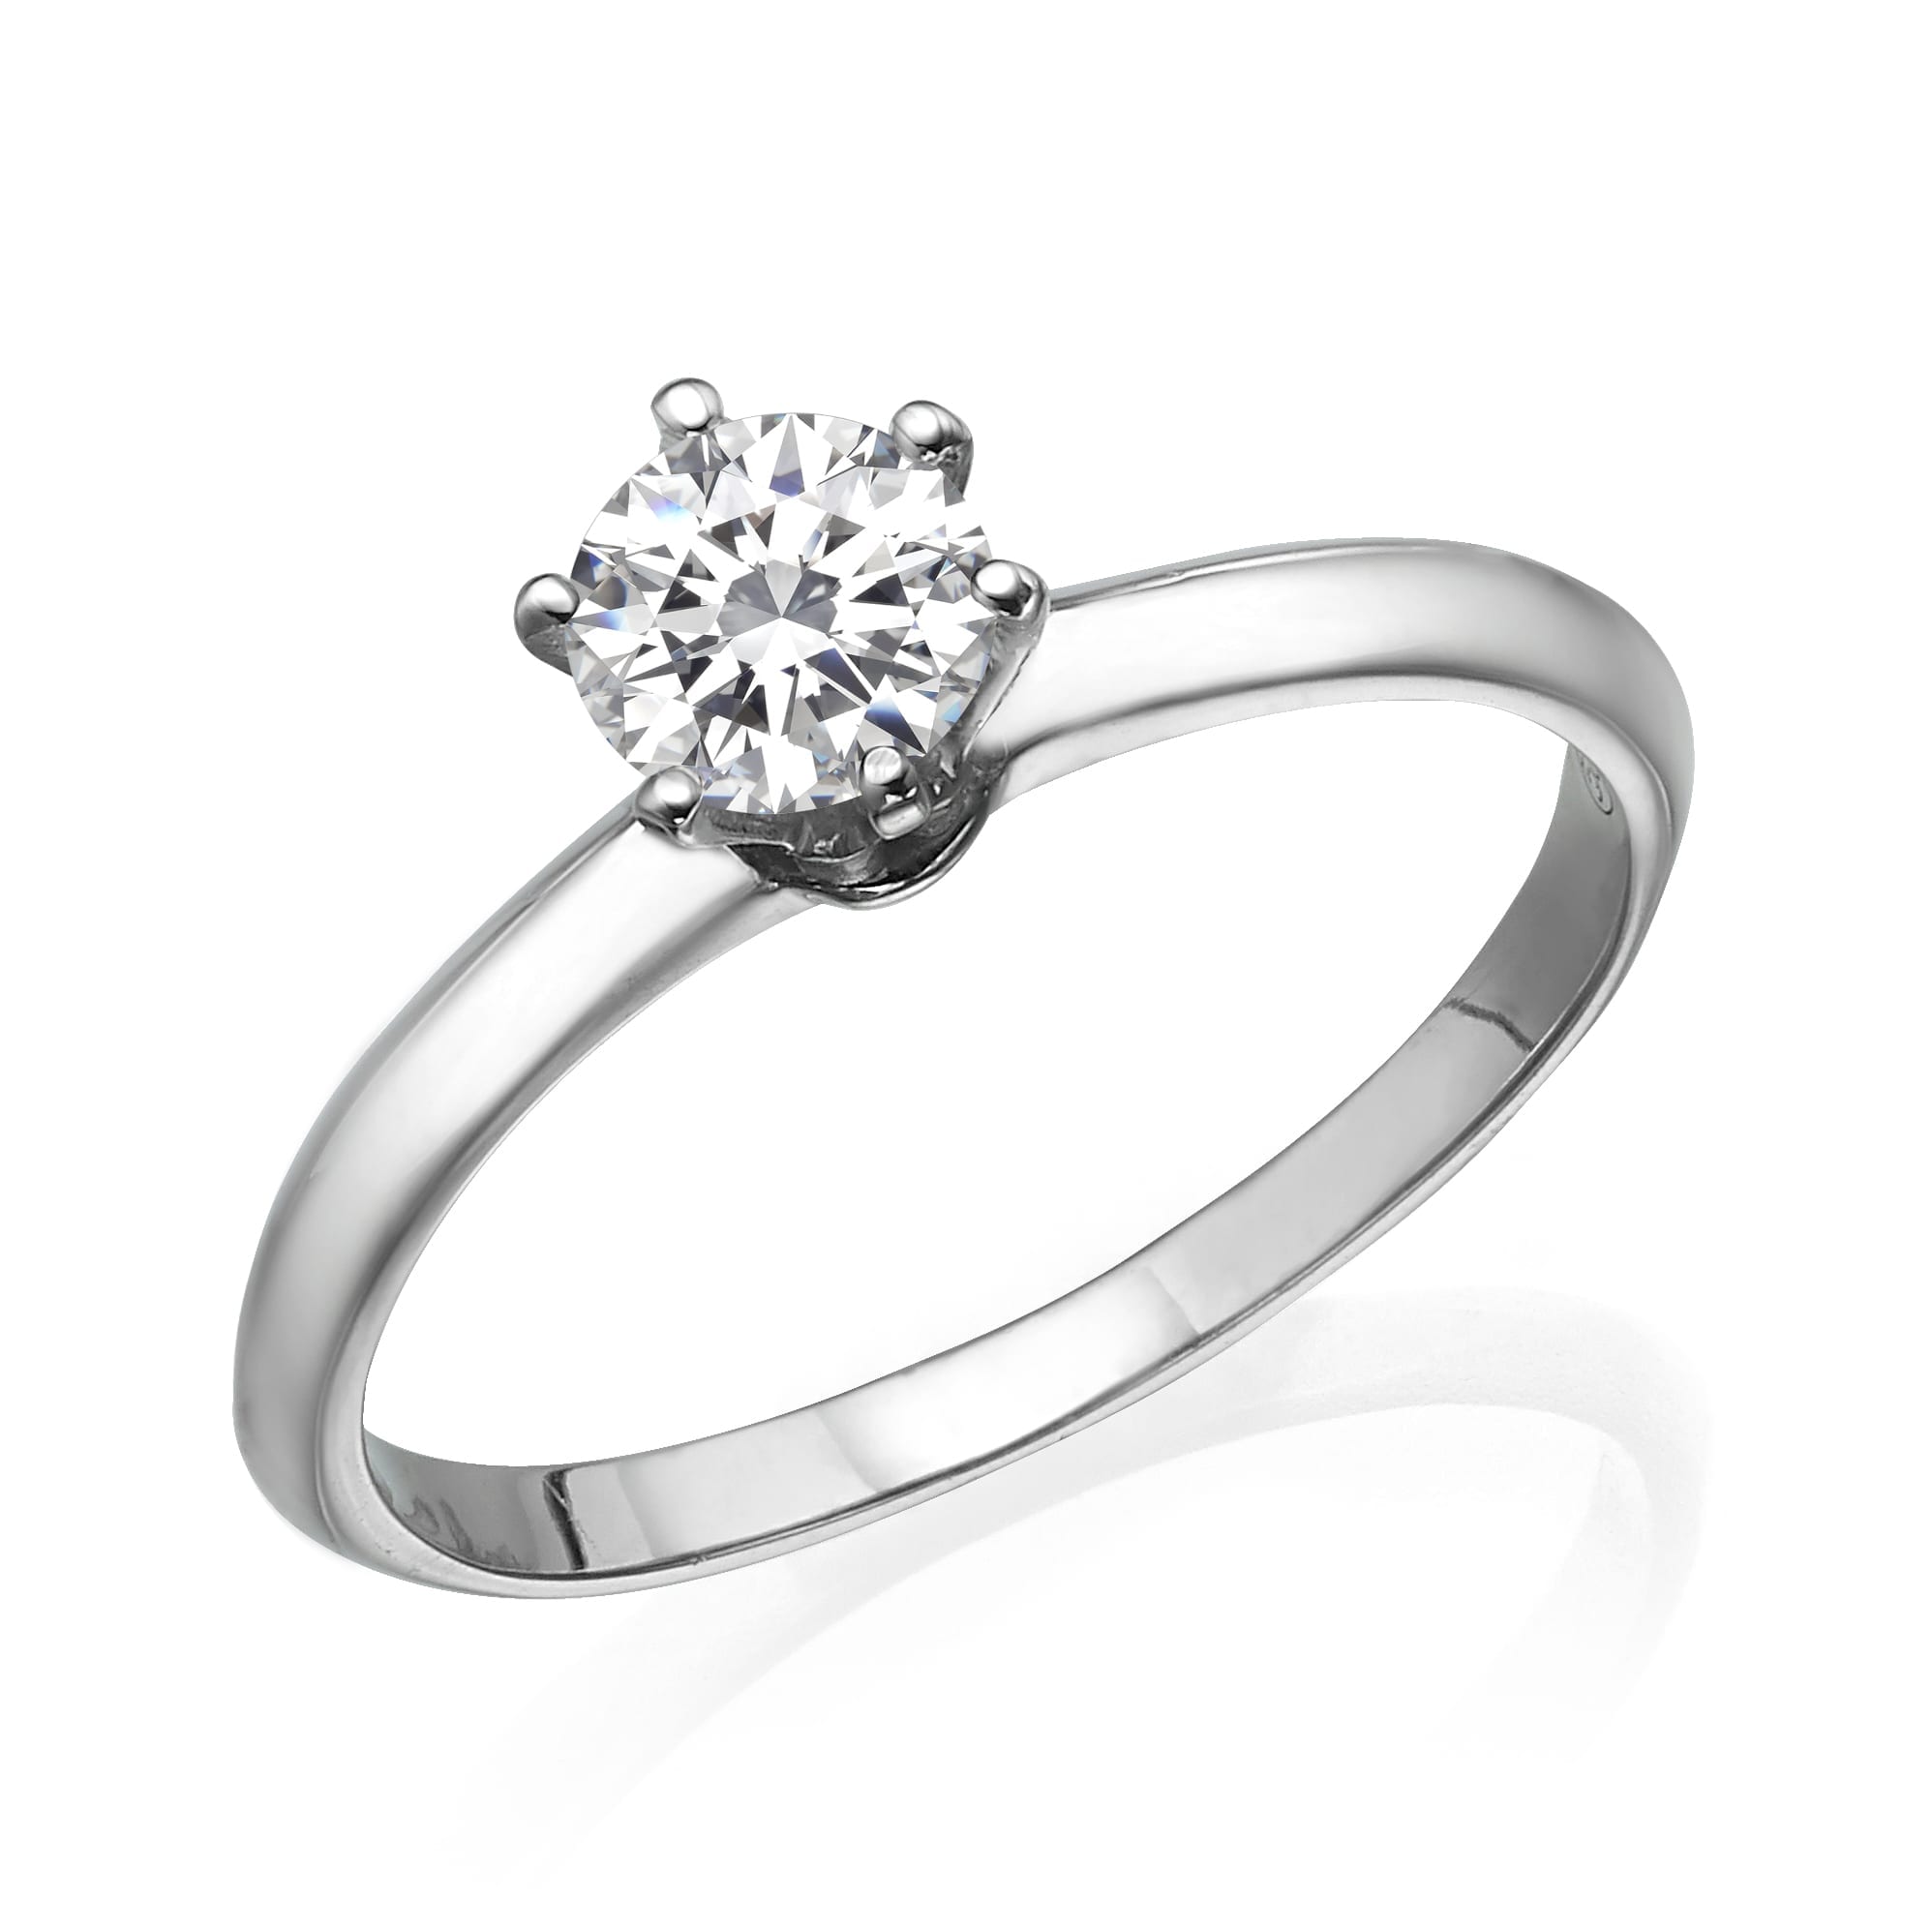 טבעת אירוסין דגם אלגנטית משובצת רצועת זהב לבן מלוטש ומלוטש, המסמלת אהבה ומחויבות נצחית.